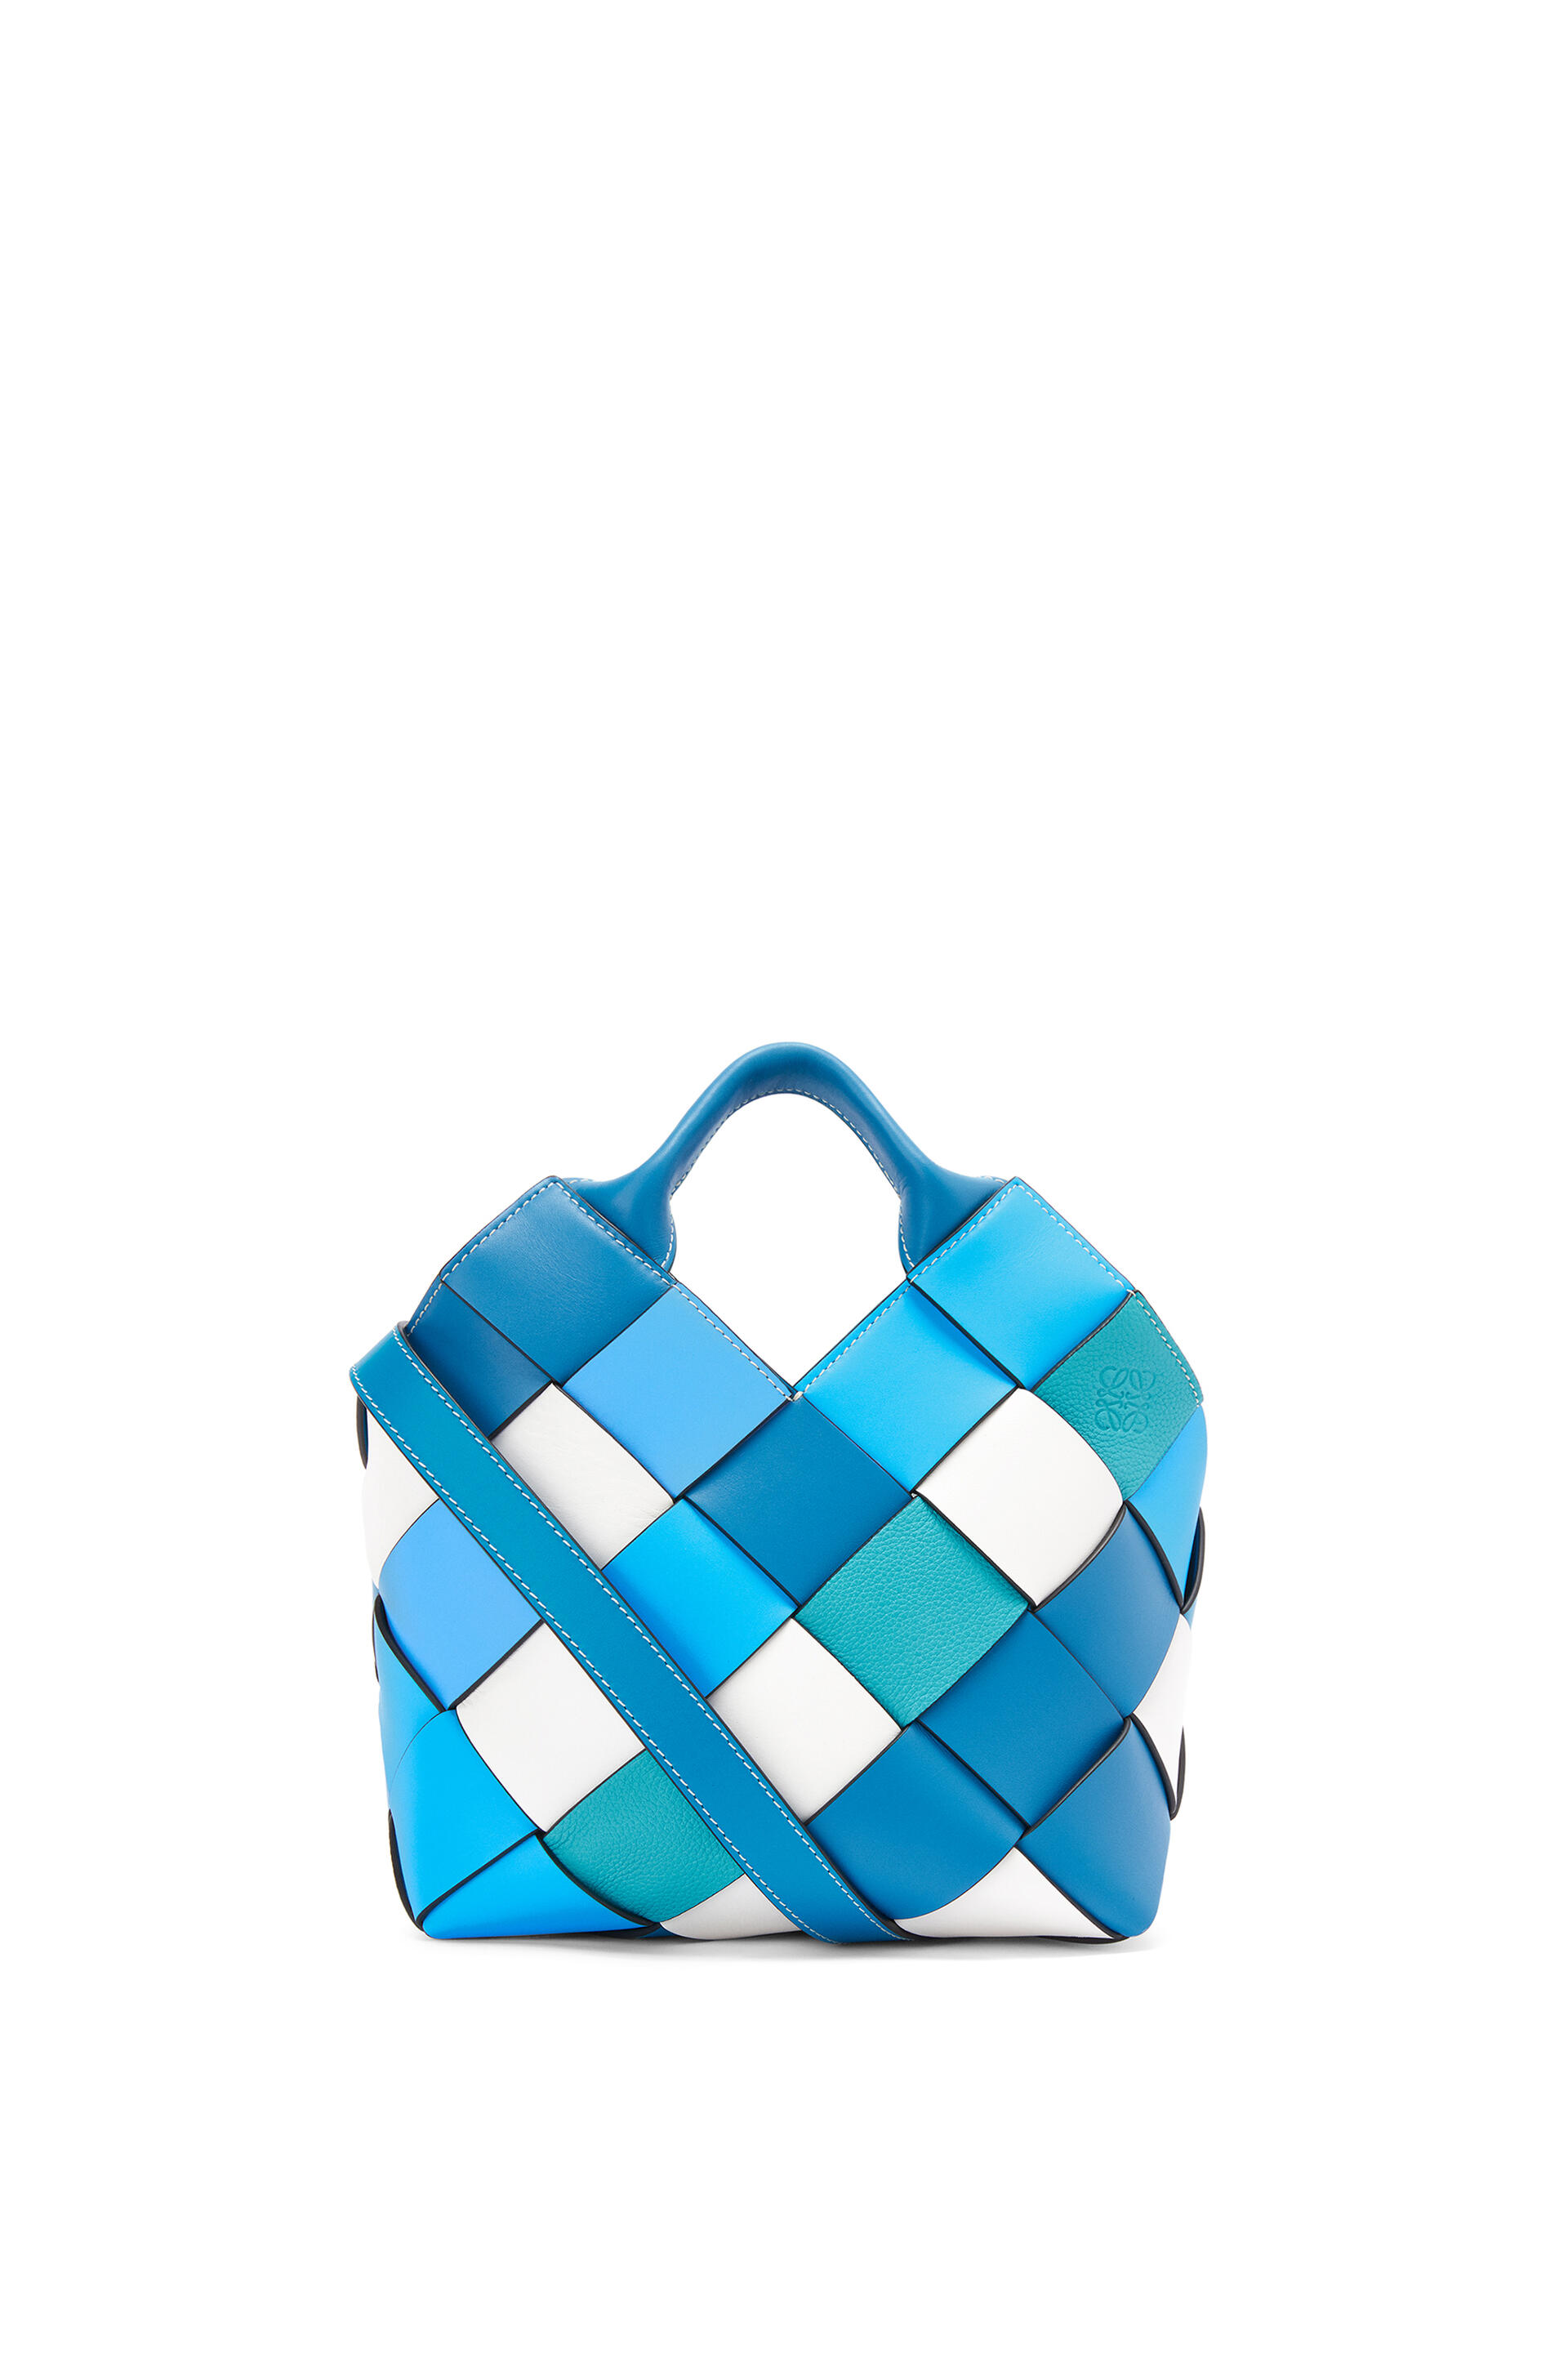 ロエベ ウーブン バスケットバッグ スモール (カーフ) ブルー/ブルー | Loewe Woven Basket Bag Small Calf Blue Blue